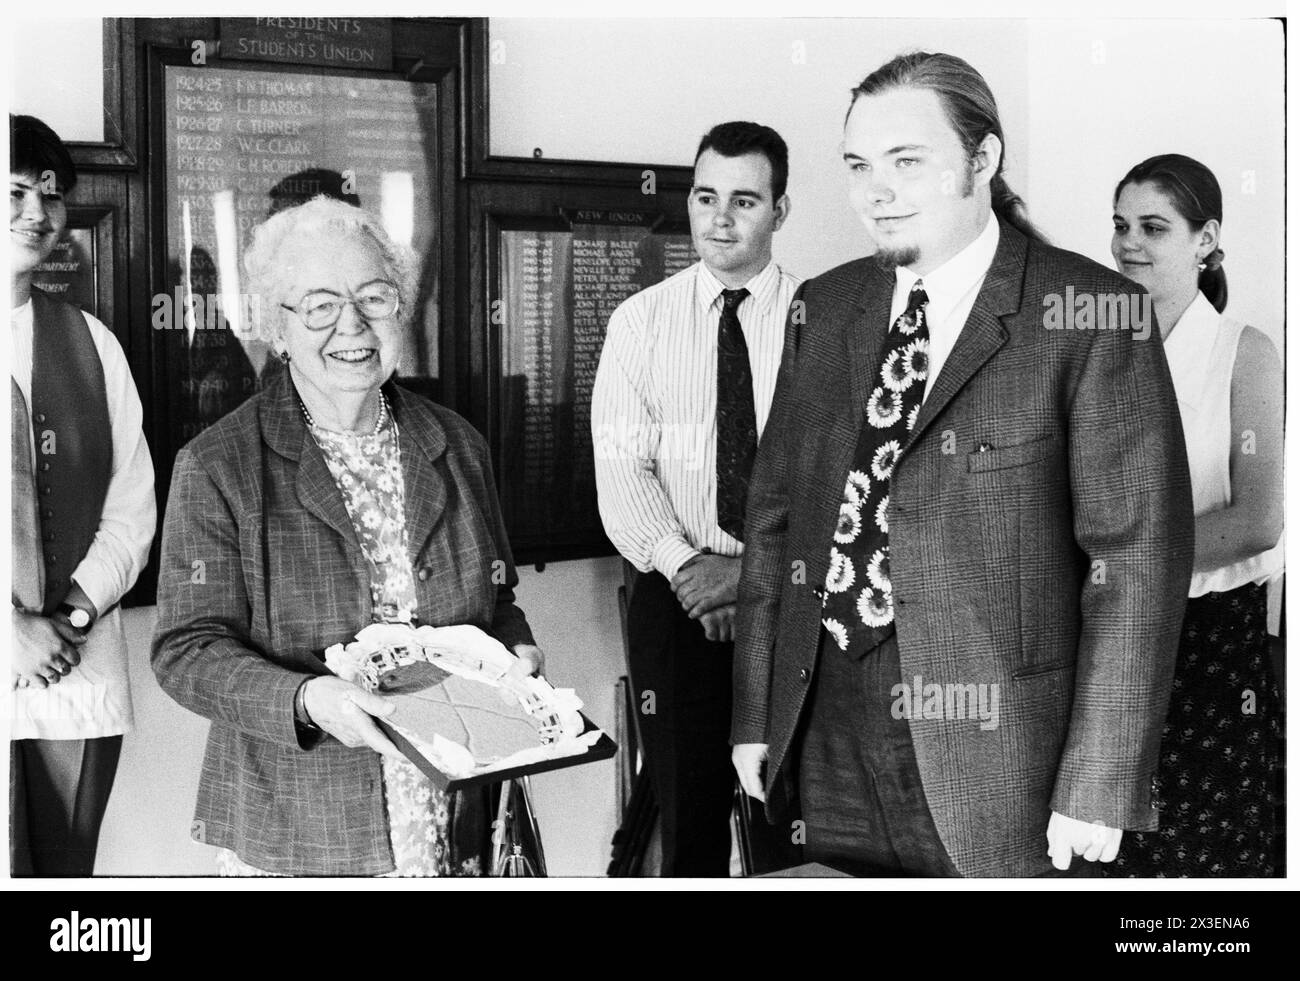 BARONNE WHITE, POLITICIENNE PIONNIÈRE, 1995 : femme politique pionnière du Parti travailliste Eirene White, baronne White (1909-1999) photographiée lors d'une cérémonie de remise des prix à vie au Syndicat des étudiants de l'Université de Cardiff le 7 juin 1995. Photo : Rob Watkins. INFO : la baronne Eirene White, une politicienne travailliste britannique née en 1909 était une figure éminente de la politique galloise et britannique d'après-guerre. En tant que députée pendant 20 ans (1950-1970) et plus tard en tant que pair à vie, elle défend des causes progressistes, en particulier le bien-être social et les droits des femmes, laissant un impact durable sur la société britannique. Banque D'Images